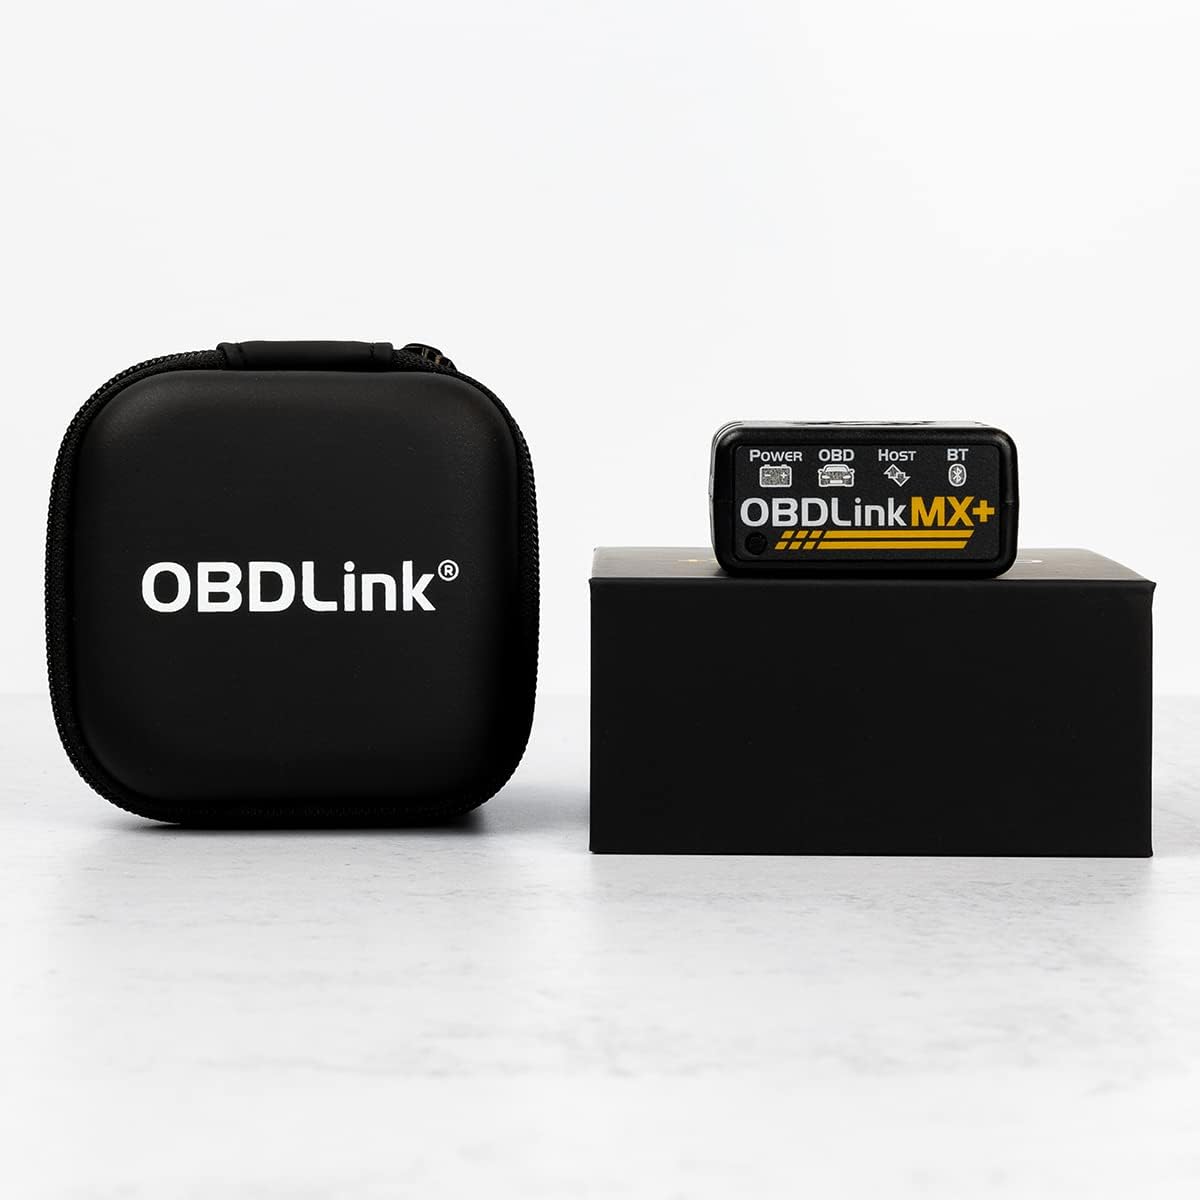 OBDLink MX+ OBD2 Bluetooth Scanner